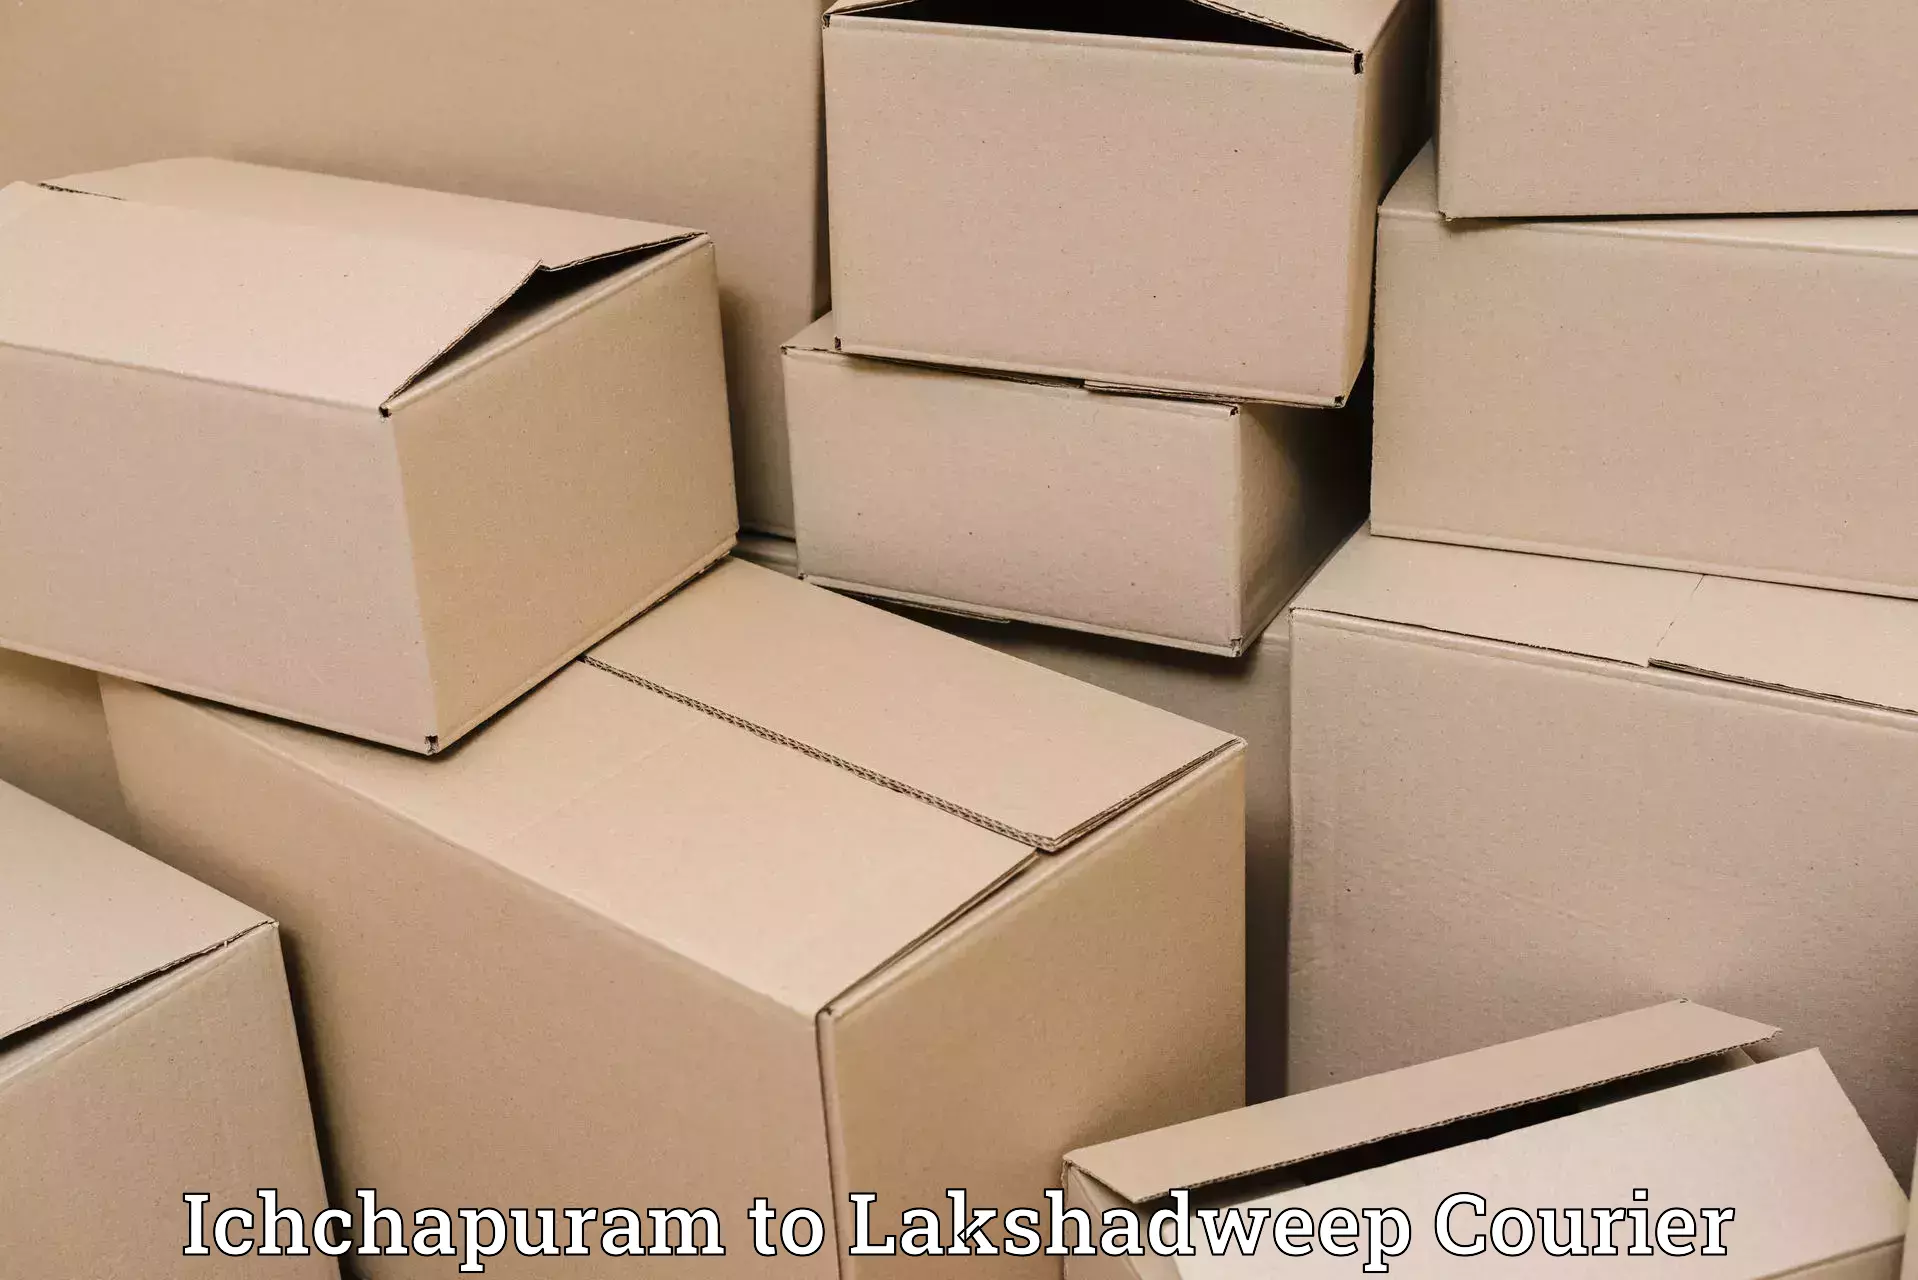 Customer-oriented courier services Ichchapuram to Lakshadweep